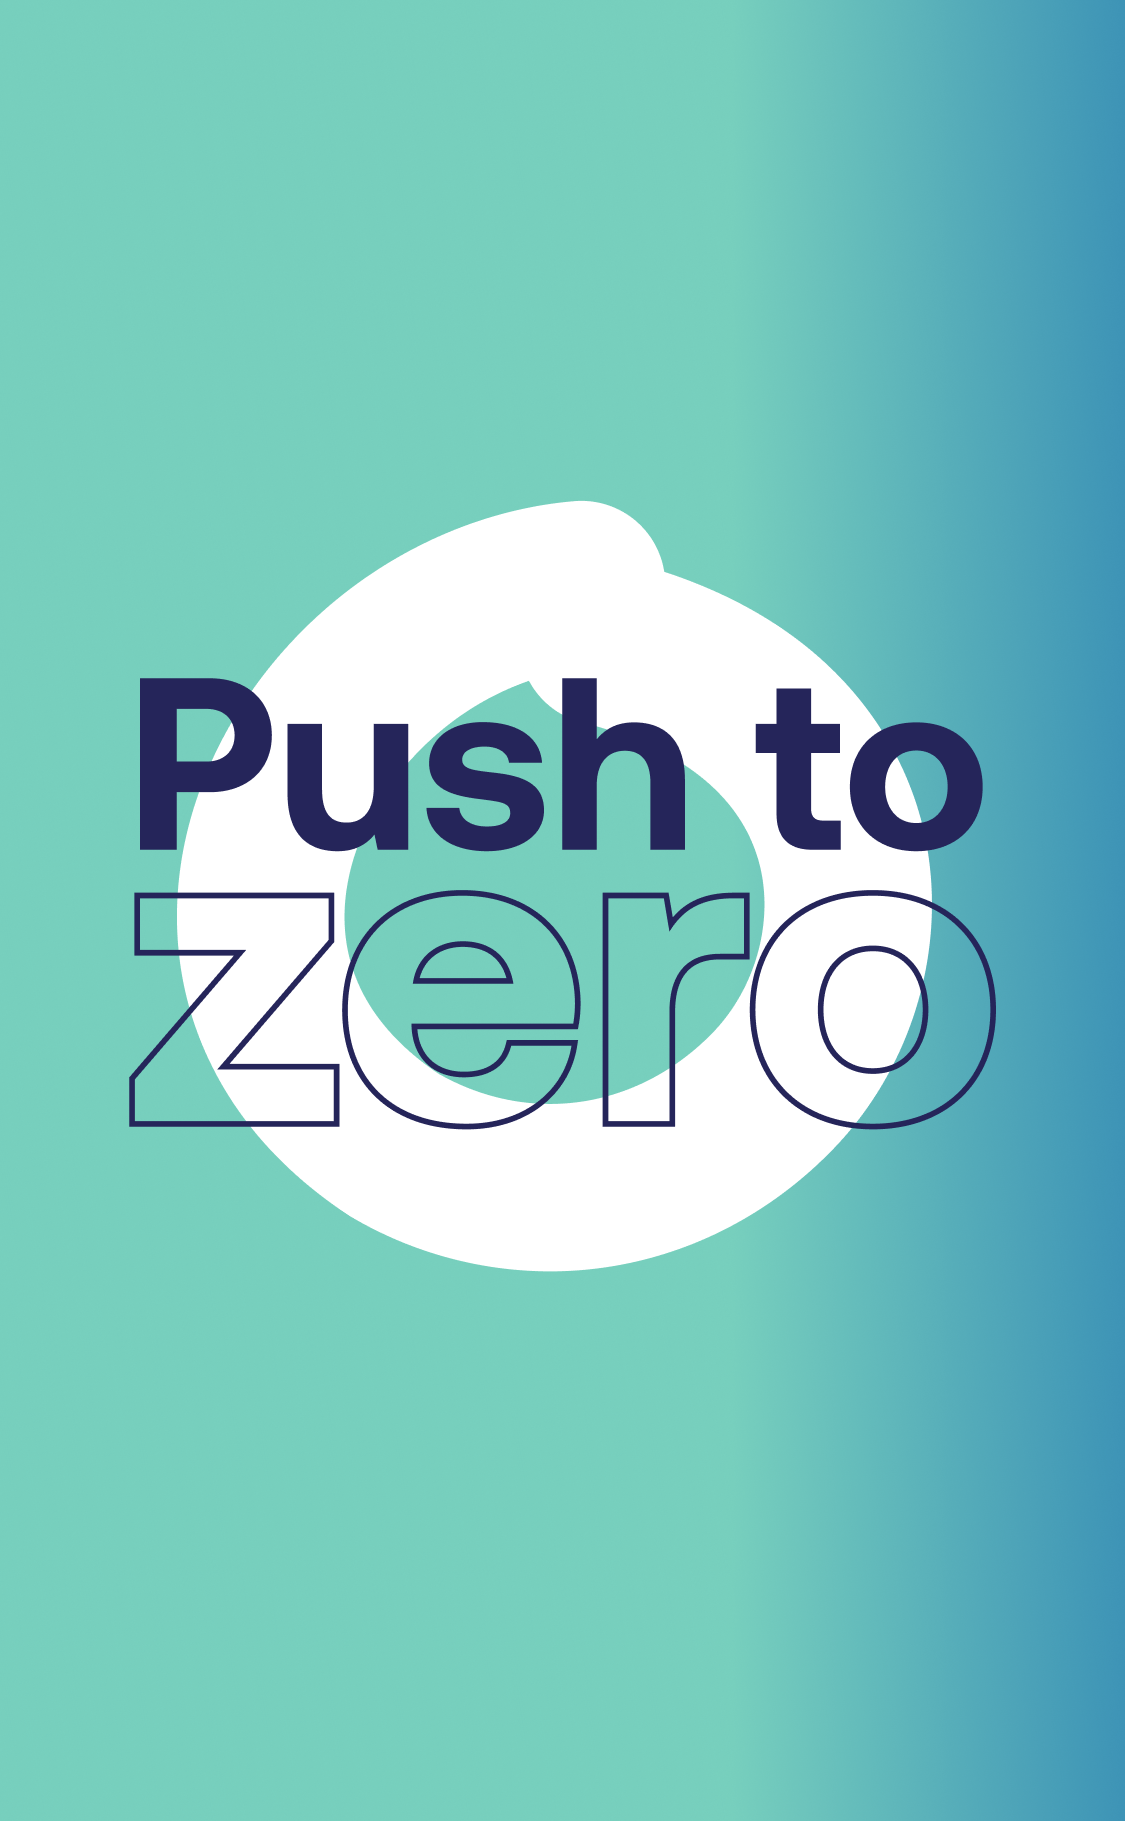 Push to Zero logo